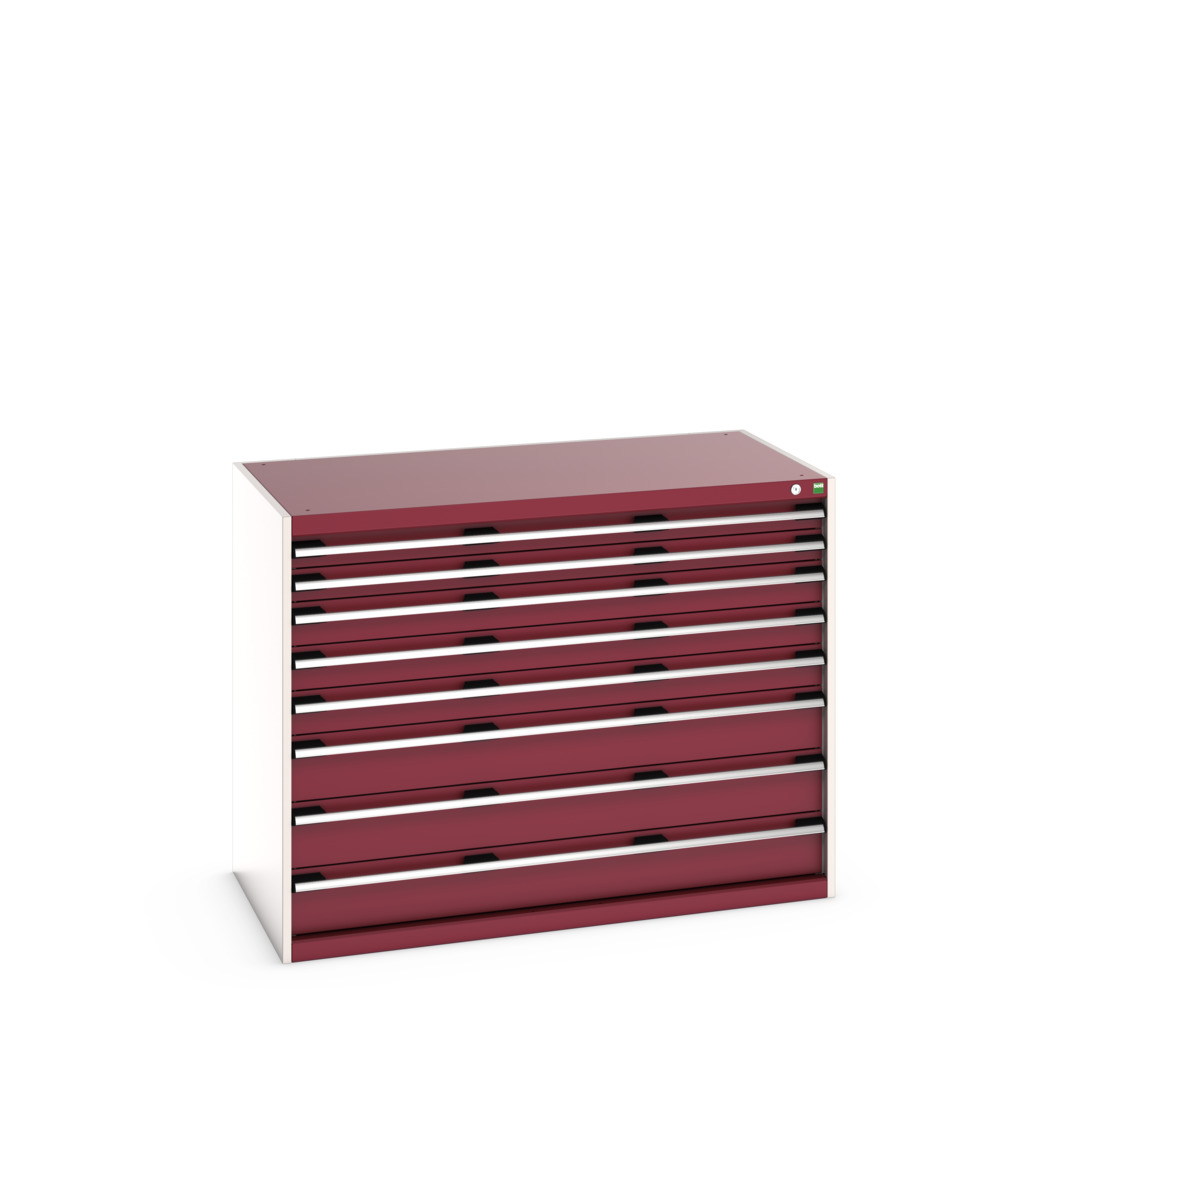 40030019.24V - cubio drawer cabinet